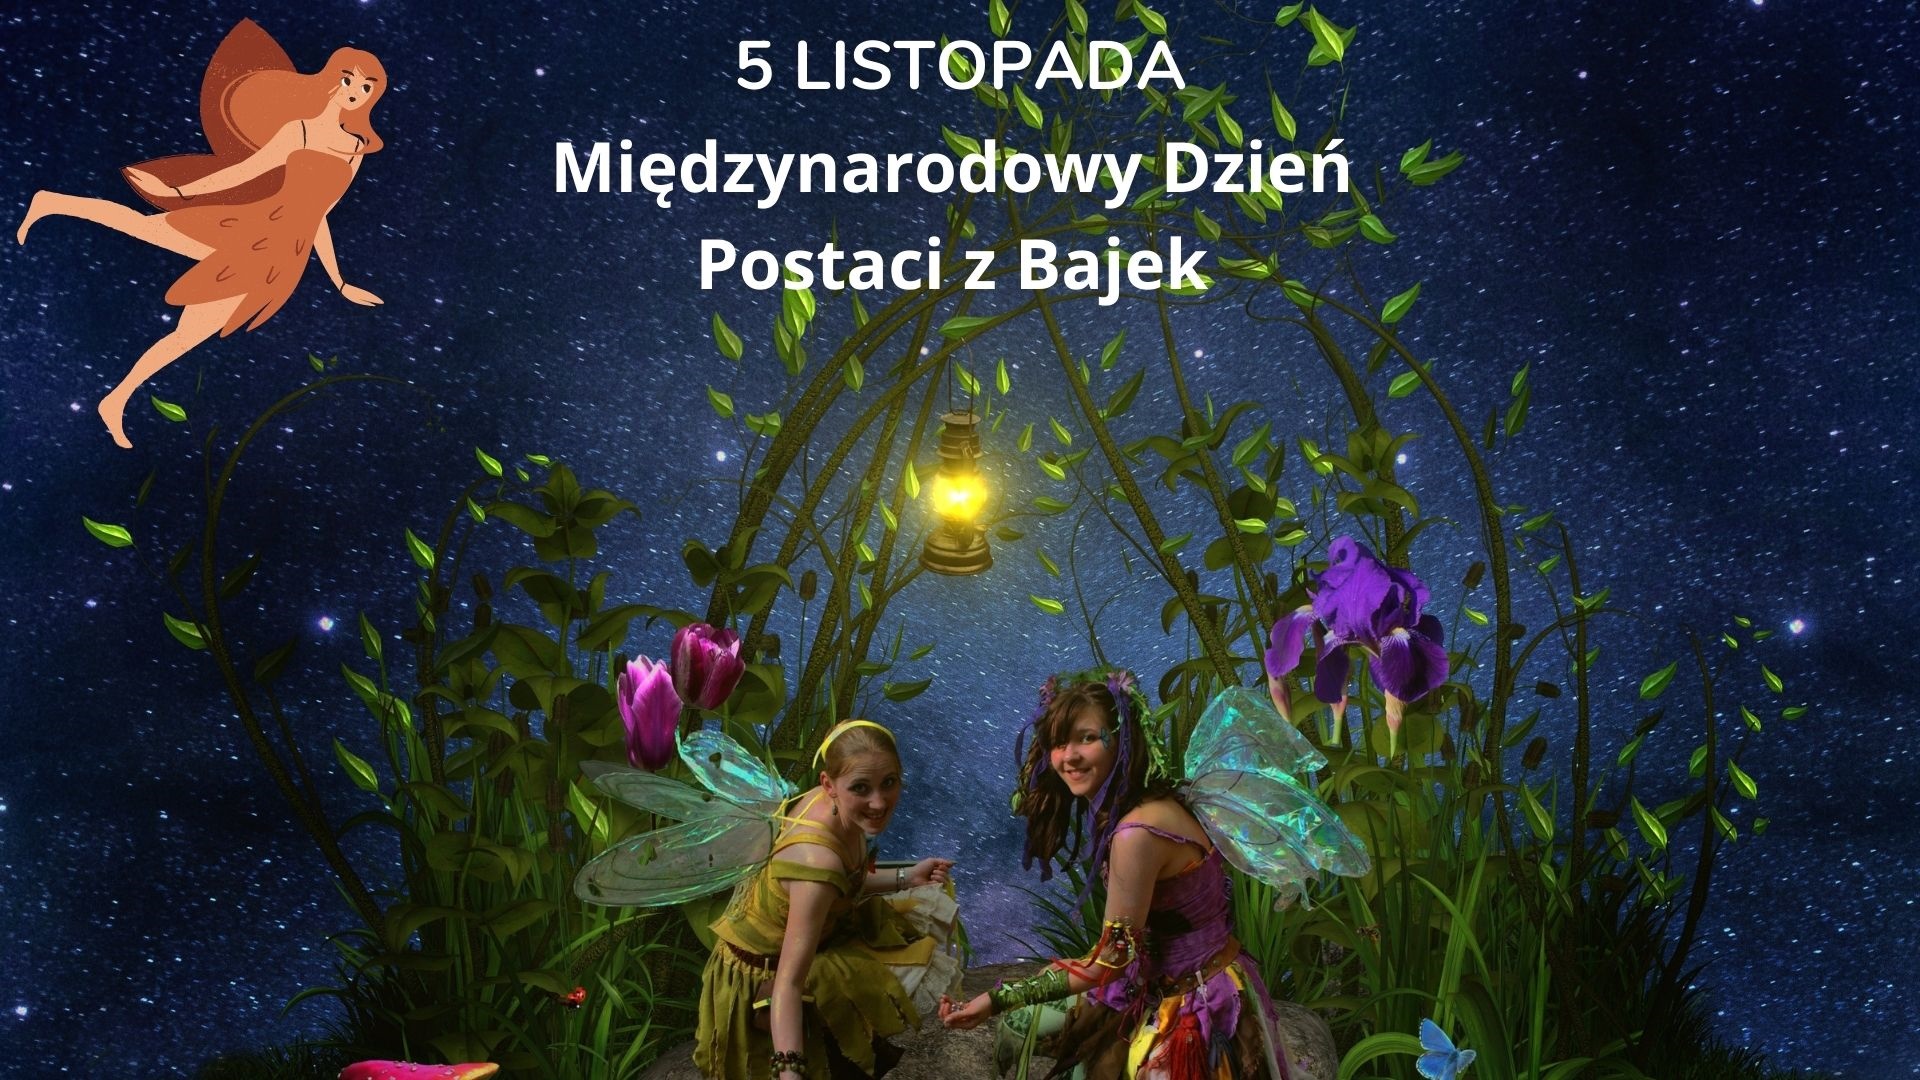 Zdjęcie przedstawiające bajkowe postaci: dziewczynki ze skrzydełkami na tle granatowego,usianego gwiazdami nieba i tekst „5 LISTOPADA Międzynarodowy Dzień Postaci z Bajek”